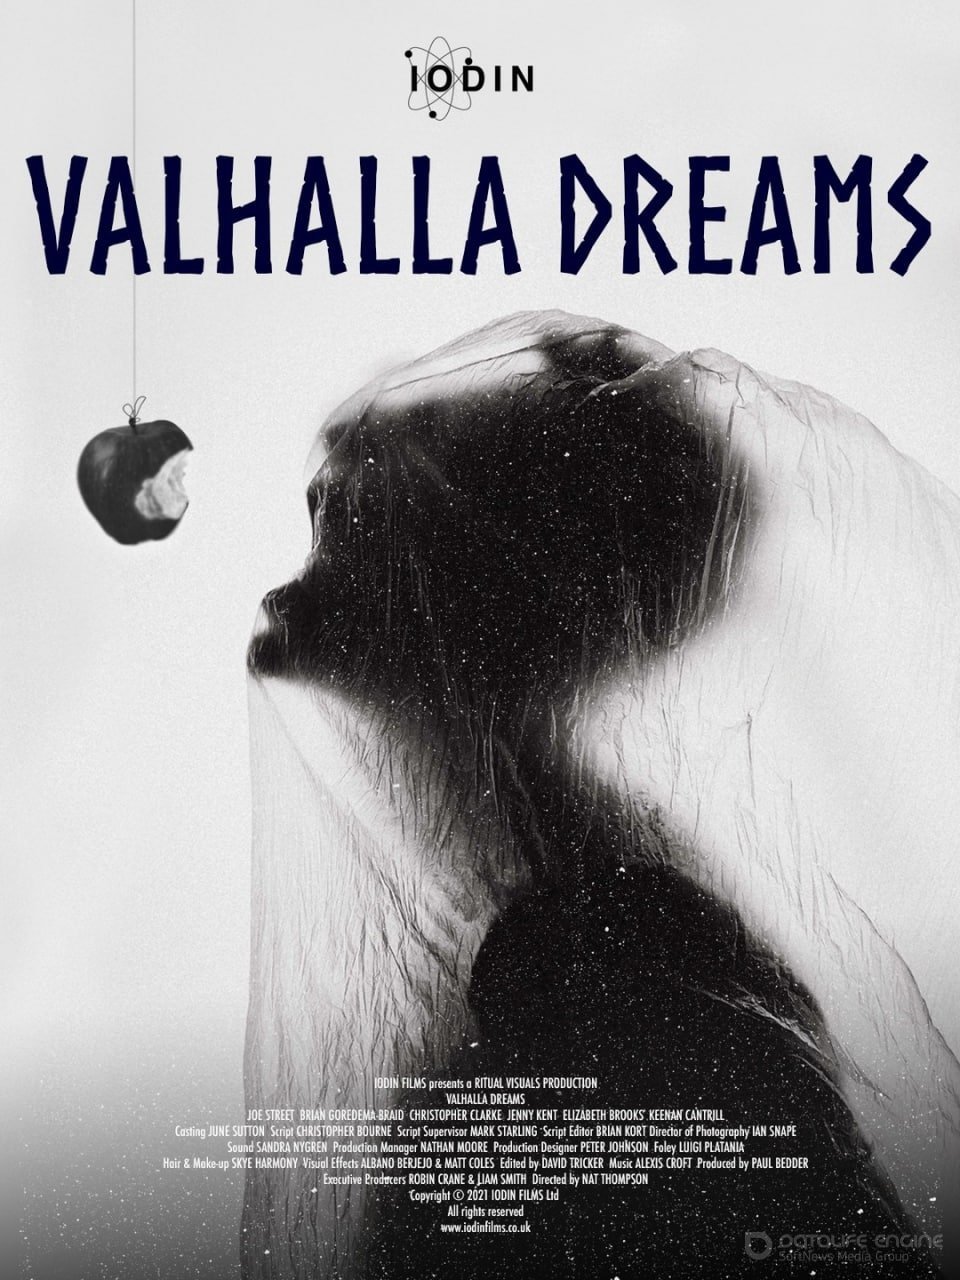 Мечты о Вальгалле (2021)